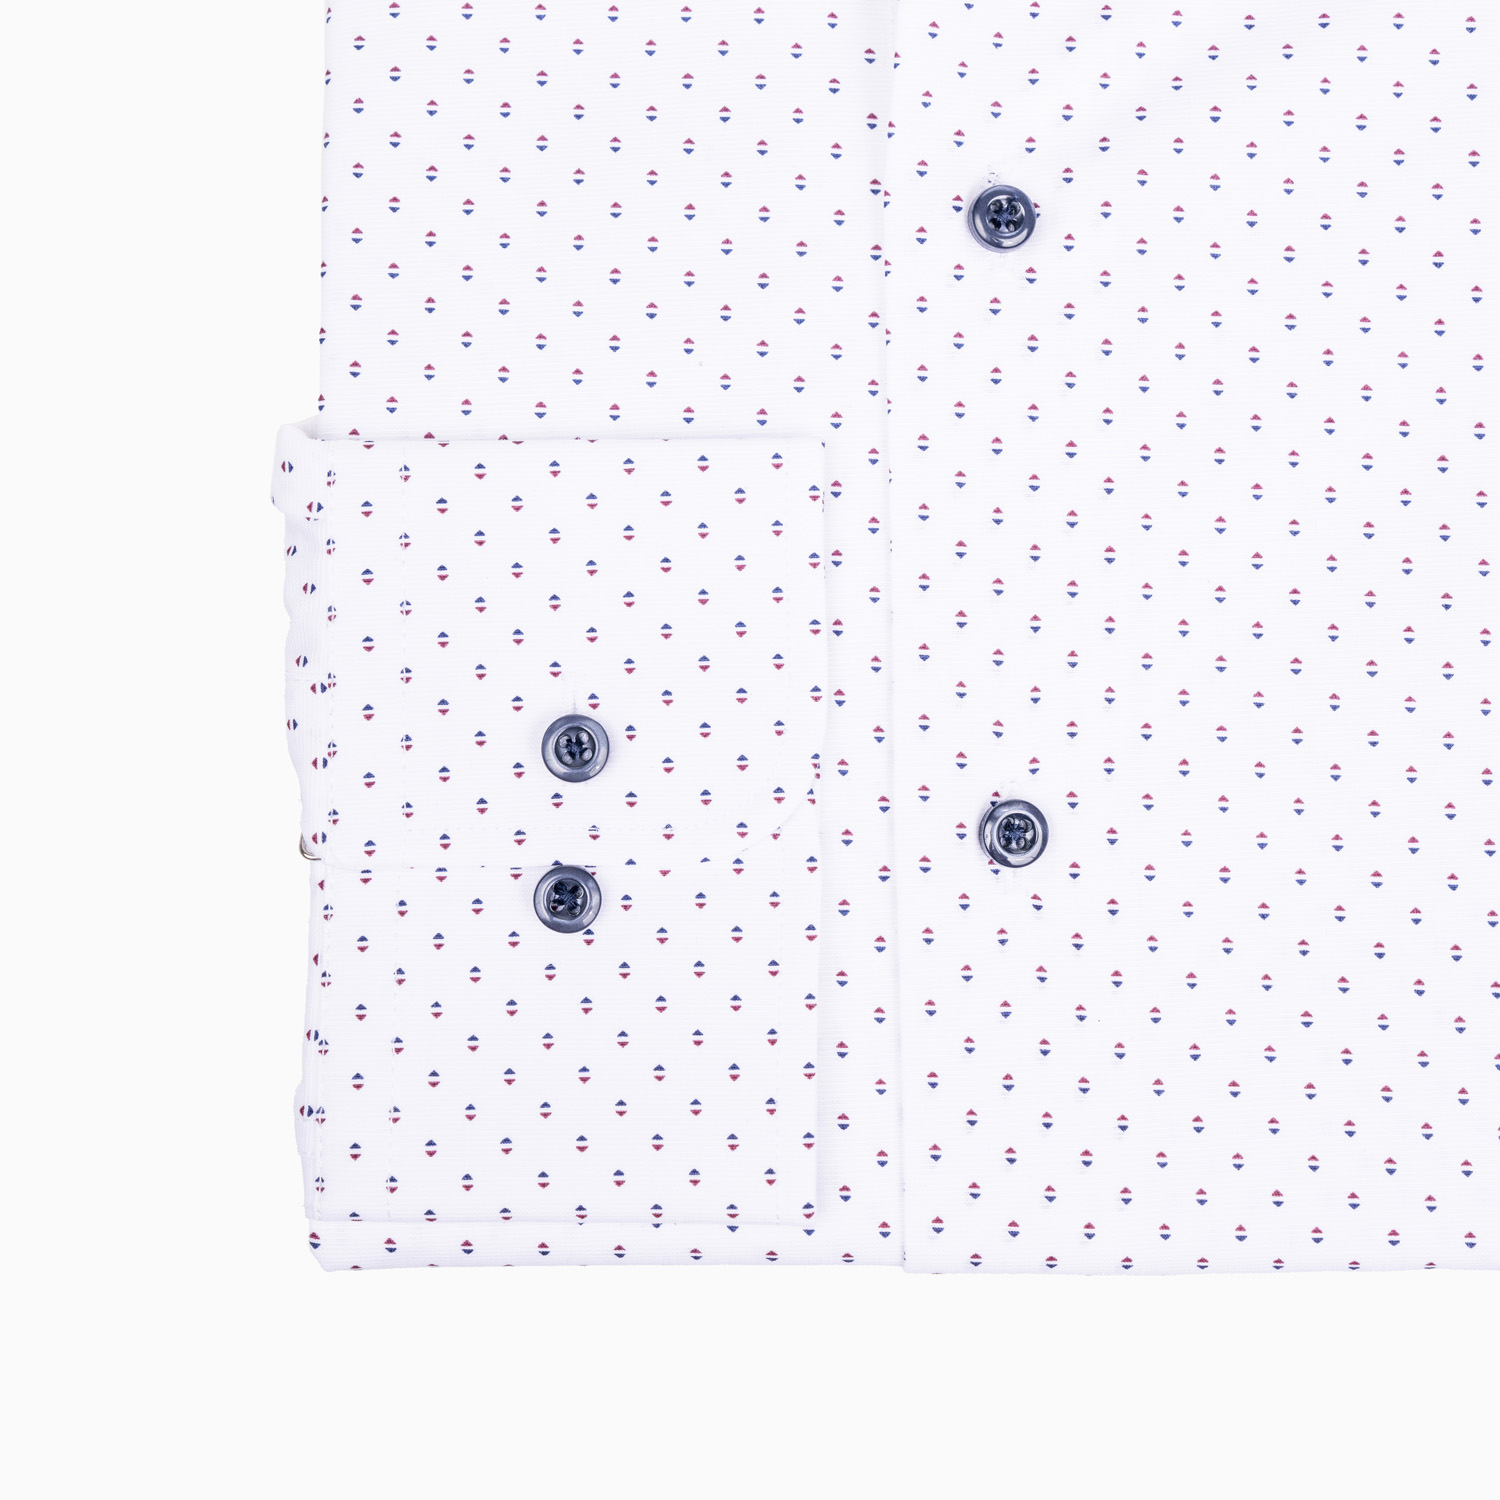 Business Hemd Weiß mit geometrischem Print - Verlängerte Ärmel- Slim Fit